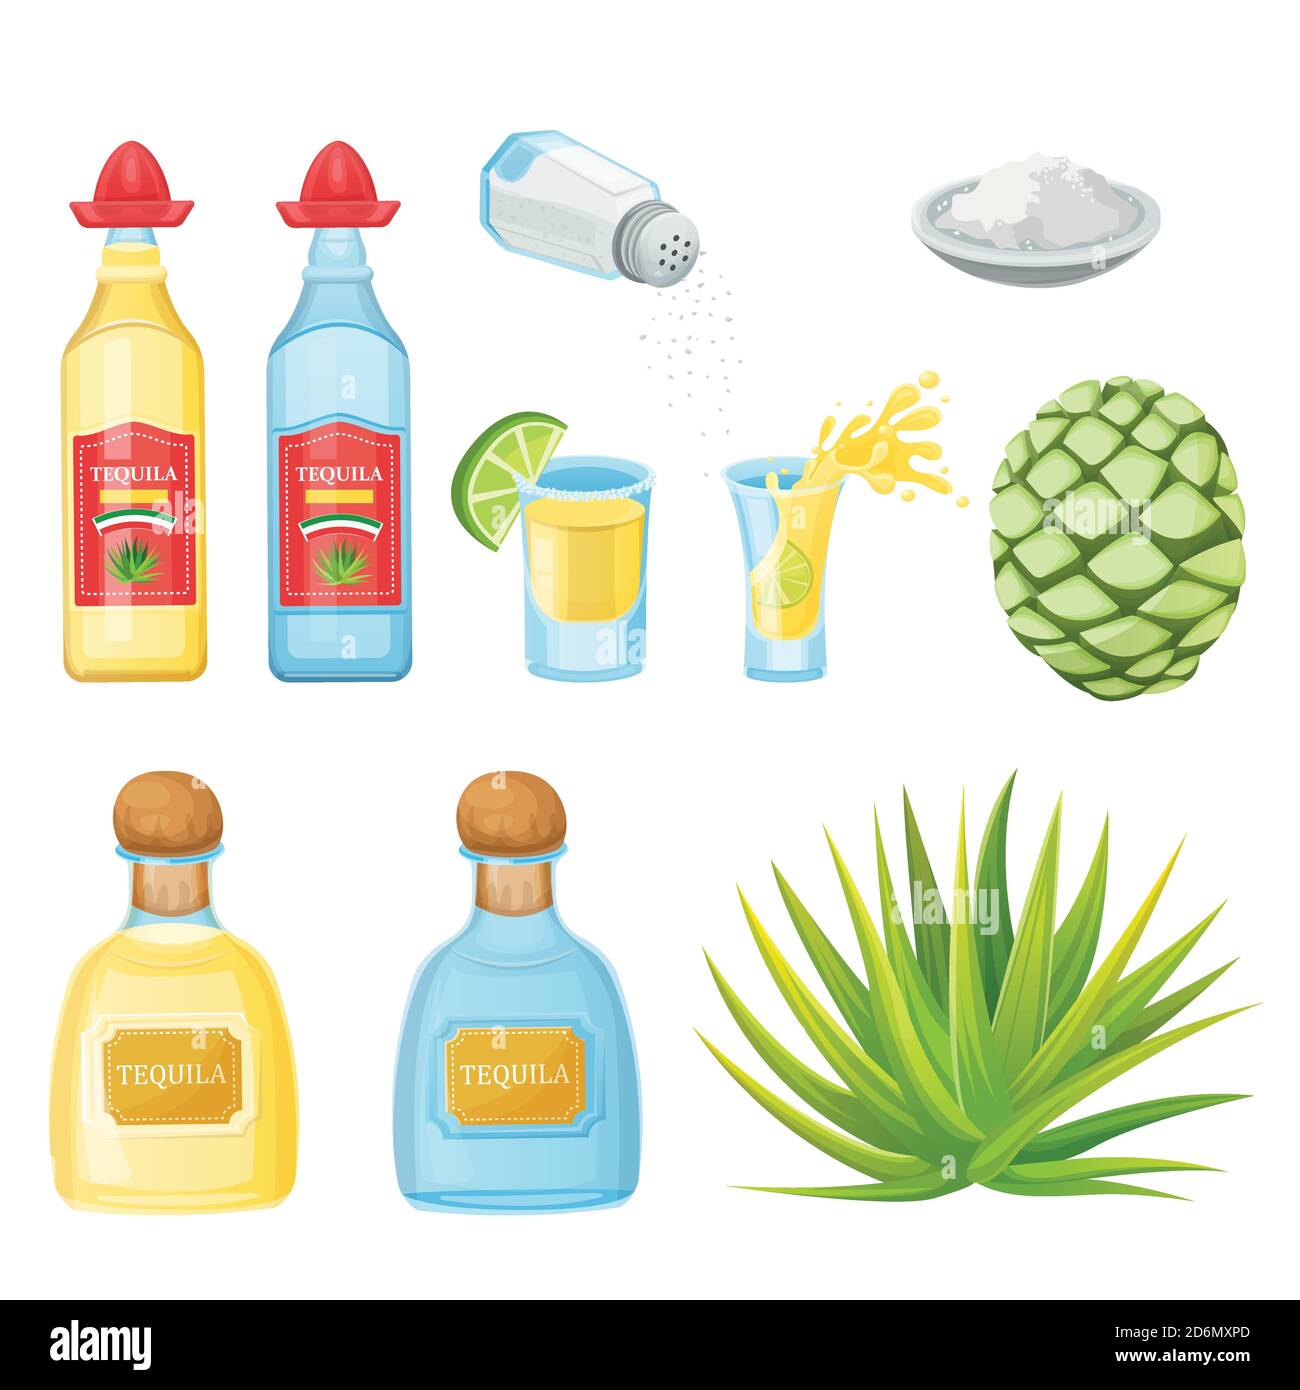 Tequila Flaschen, Glas, Salz und Agave Wurzel Zutaten, Vektor-Cartoon-Illustration. Mexikanische alkoholfreie Getränke und Cocktails Menüelemente. Stock Vektor